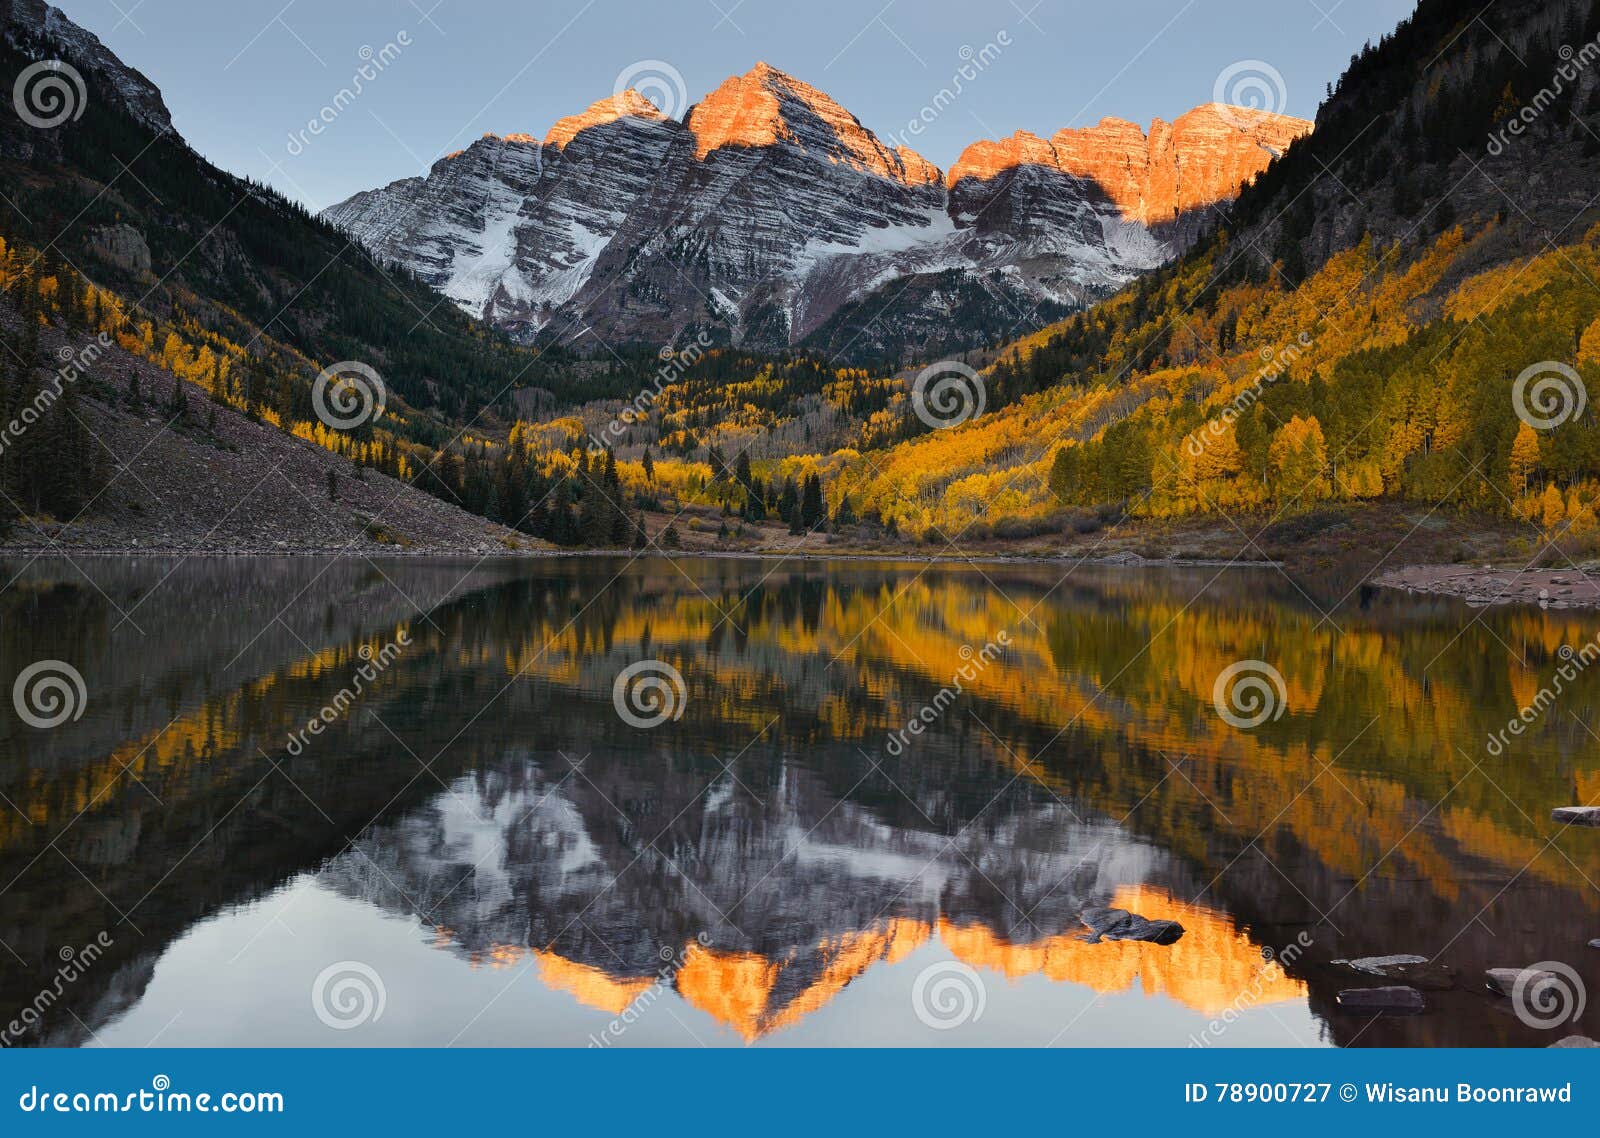 maroon bells peak sunrise aspen fall colorado